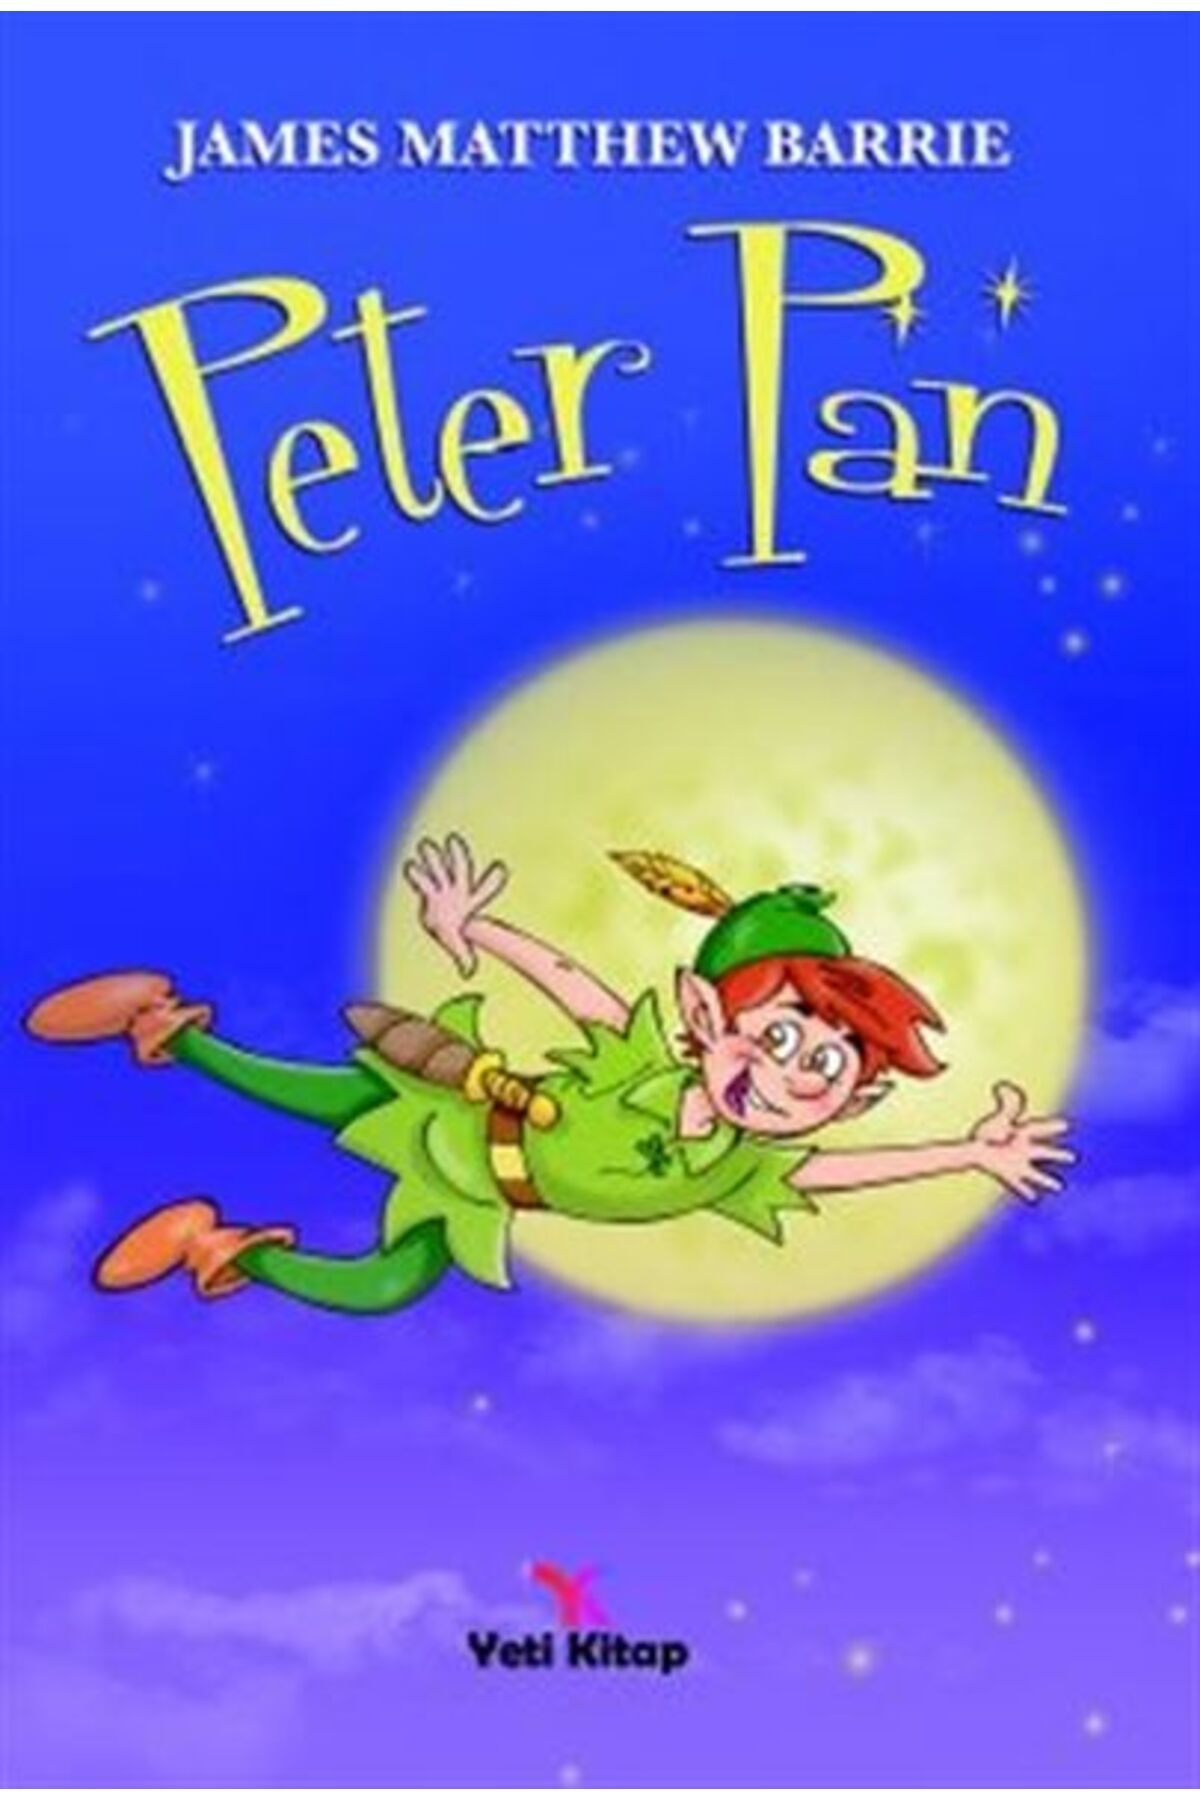 yeti kitap Peter Pan